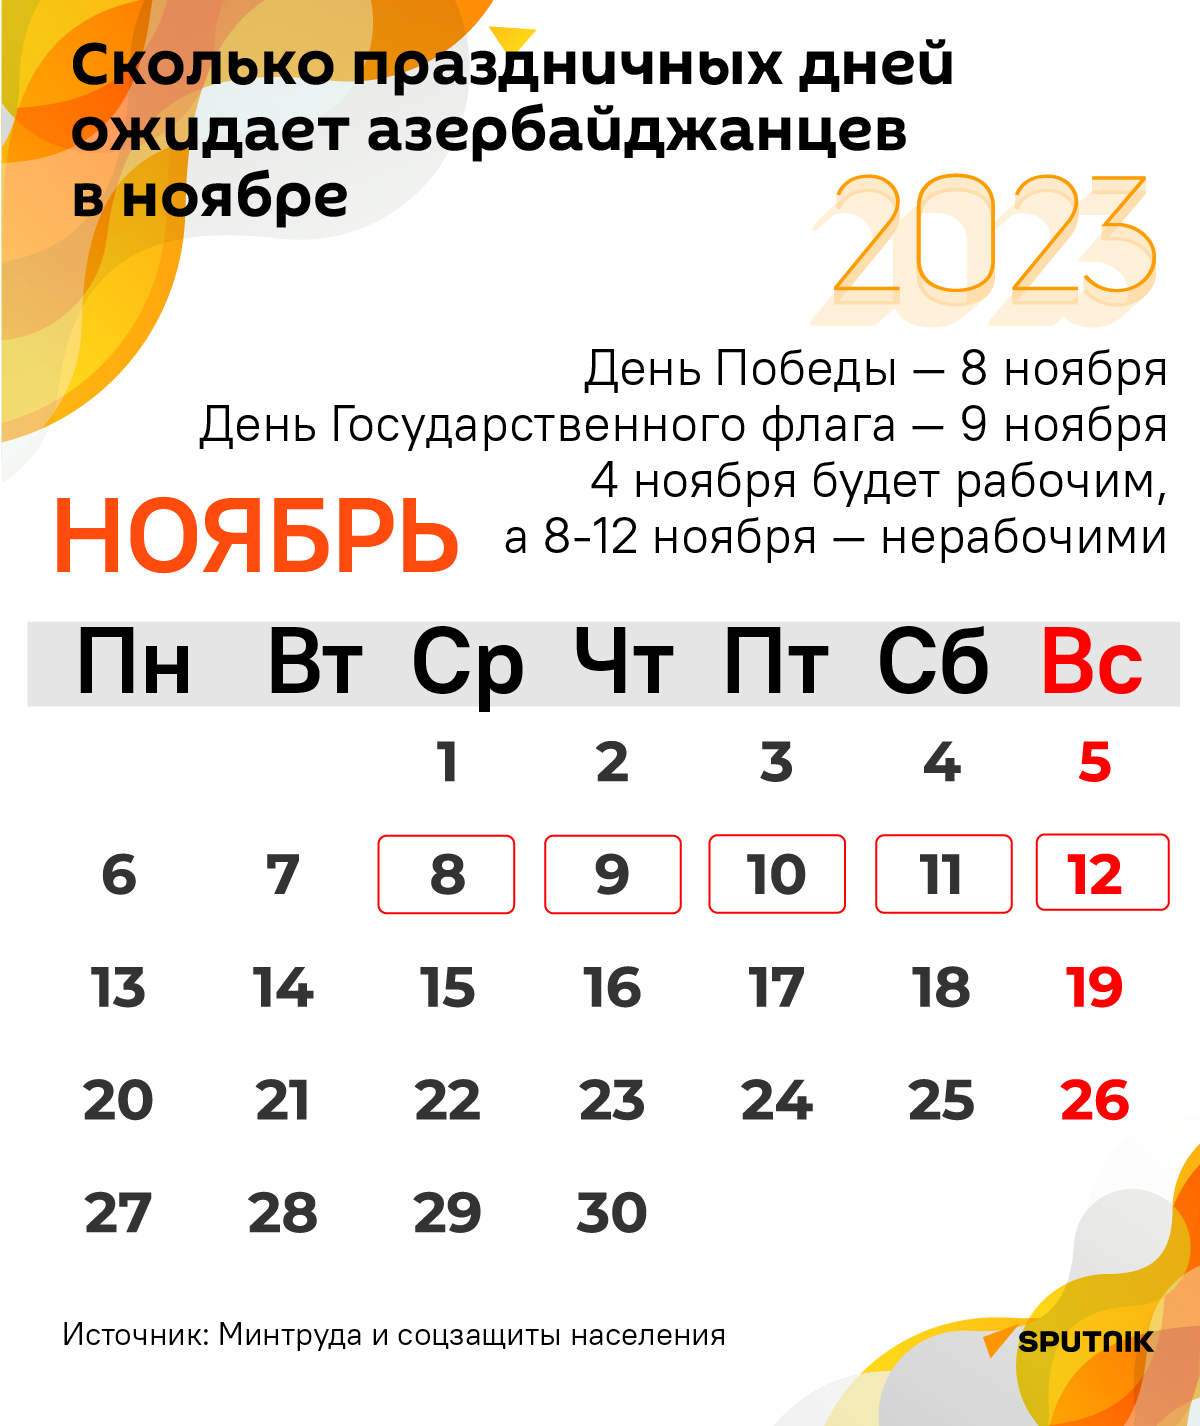 Инфографика: Сколько праздничных дней  ожидает азербайджанцев в ноябре - Sputnik Азербайджан